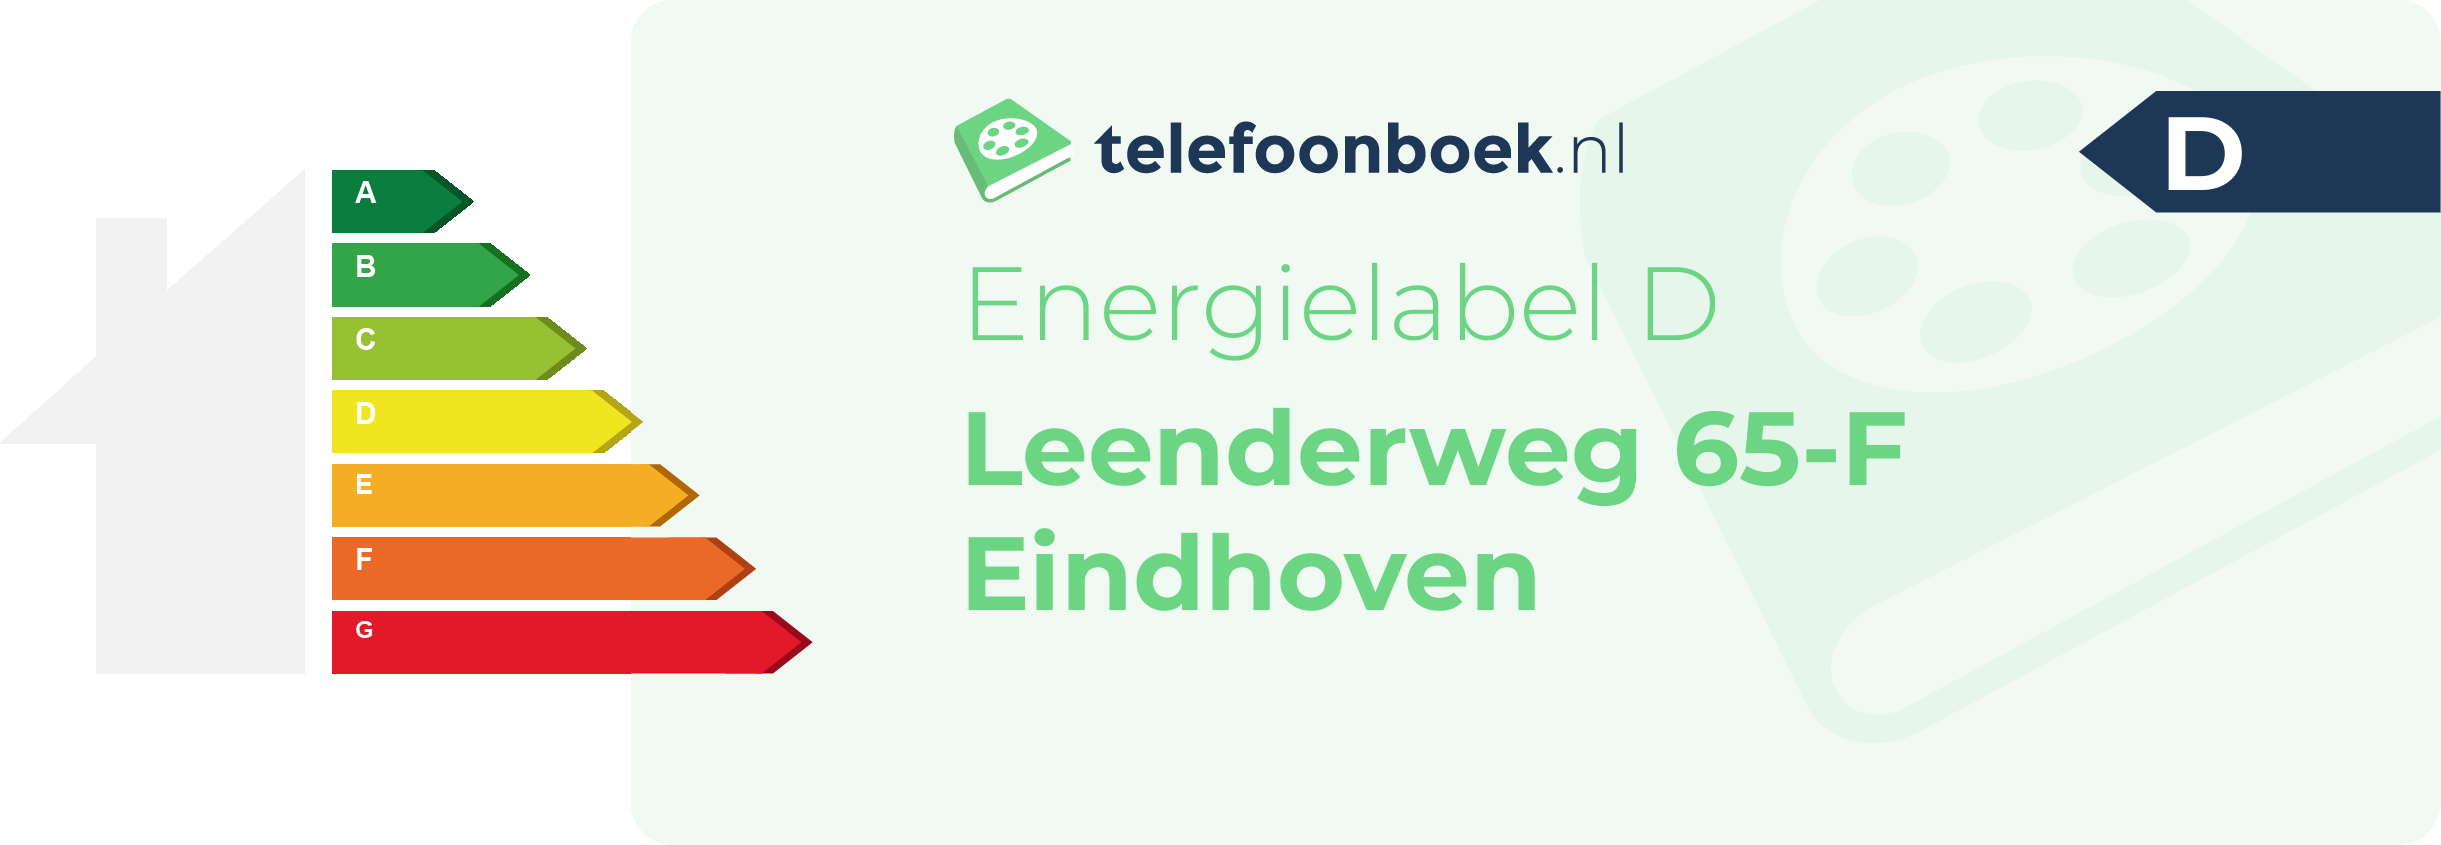 Energielabel Leenderweg 65-F Eindhoven